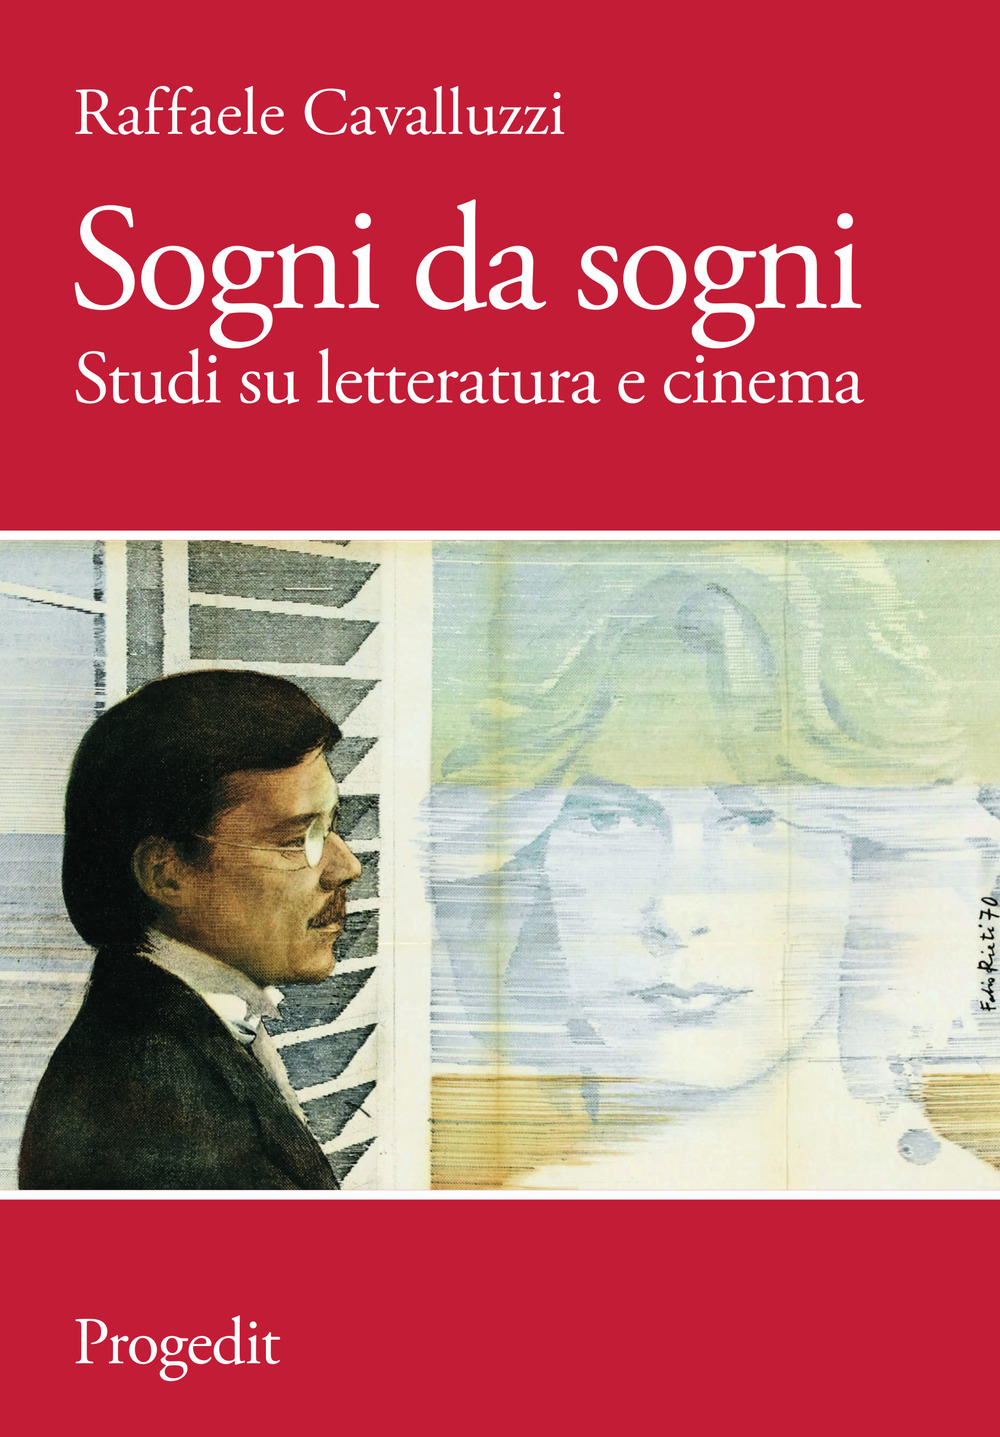 Libri Raffaele Cavalluzzi - Sogni Da Sogni. Studi Su Letteratura E Cinema NUOVO SIGILLATO, EDIZIONE DEL 01/12/2018 SUBITO DISPONIBILE